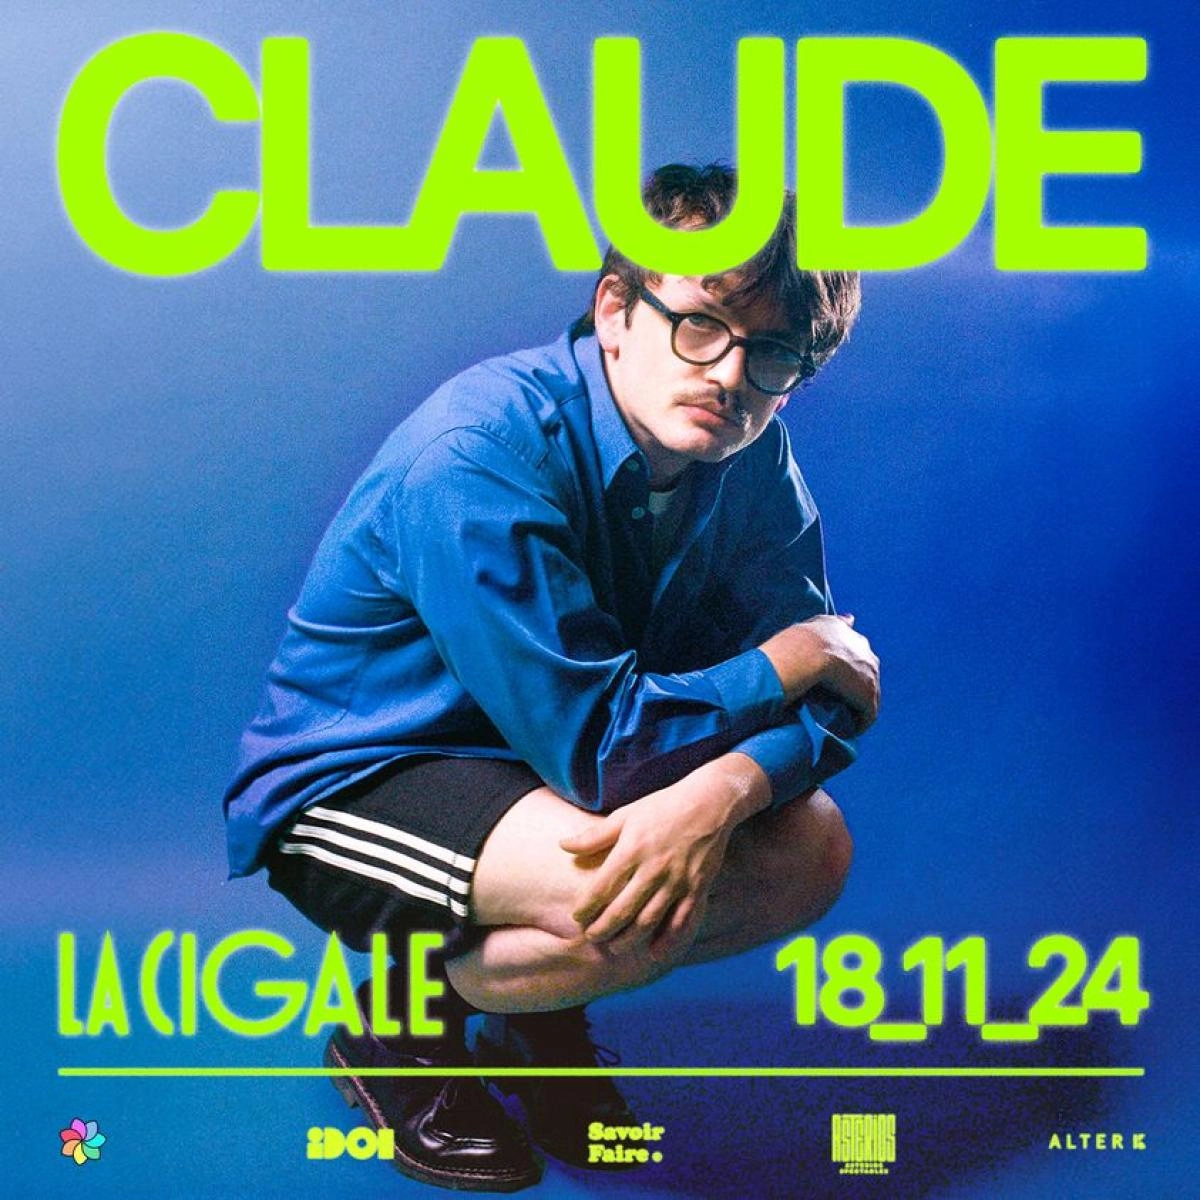 Claude in der La Cigale Tickets